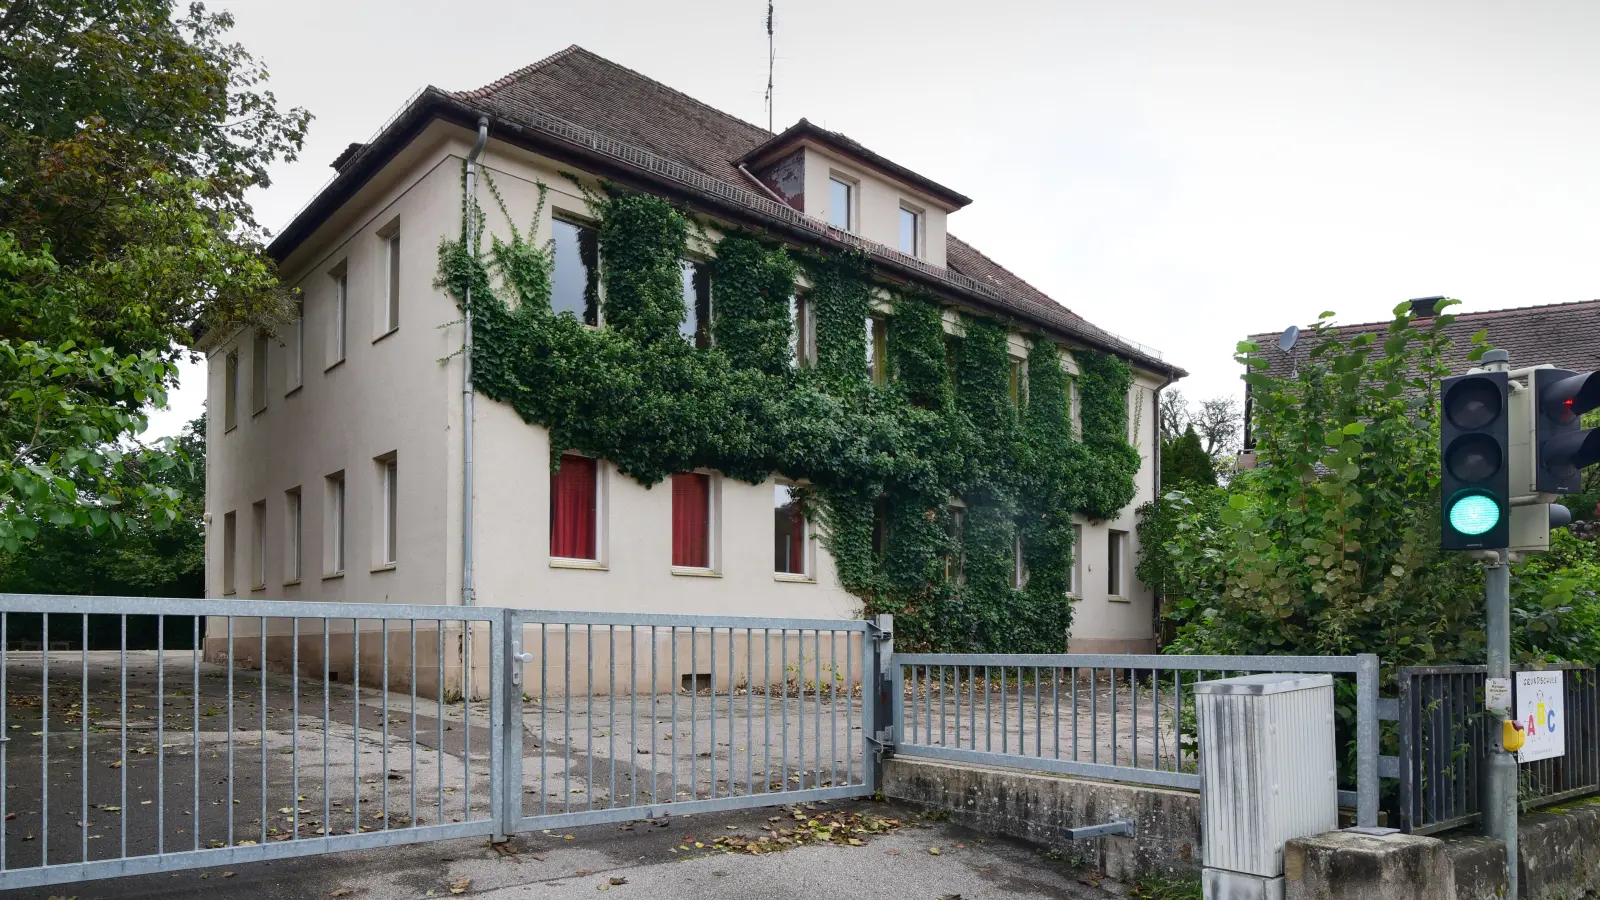 Seit Anfang August steht das alte Schulgebäude in Schalkhausen leer. Jetzt beginnen die Überlegungen zur weiteren Nutzung auf dem zentralen, städtischen Grundstück. (Foto: Irmeli Paul)